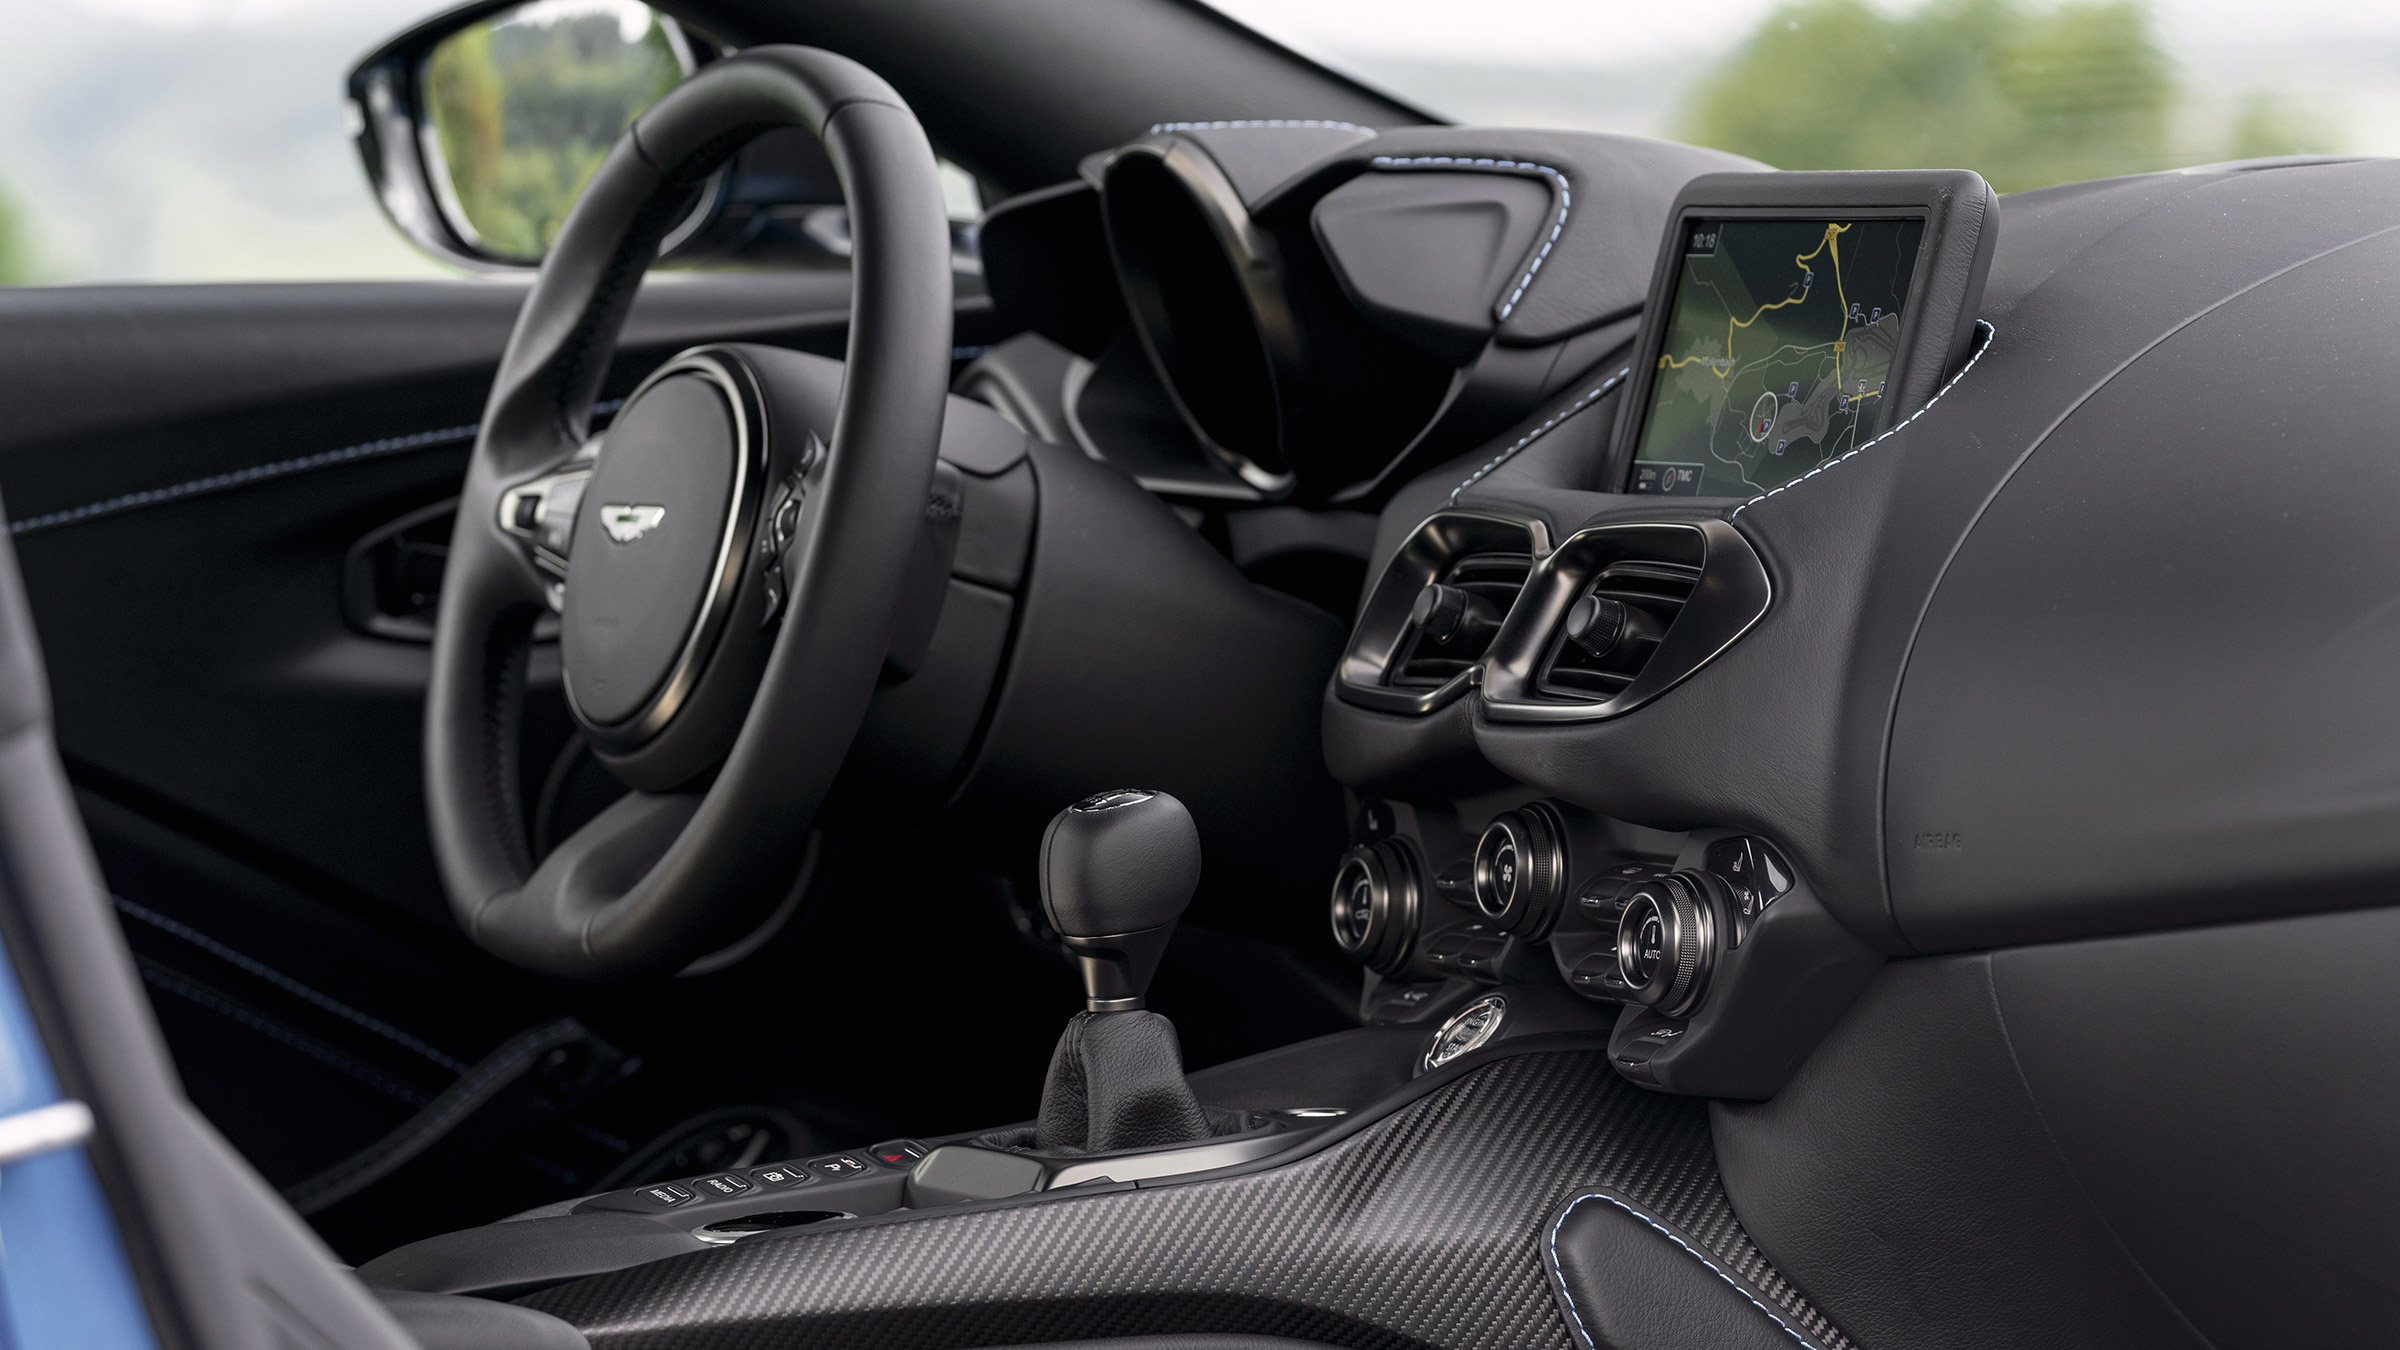 Grace Mogelijk methaan 2019 Aston Martin Vantage AMR Manual review | evo